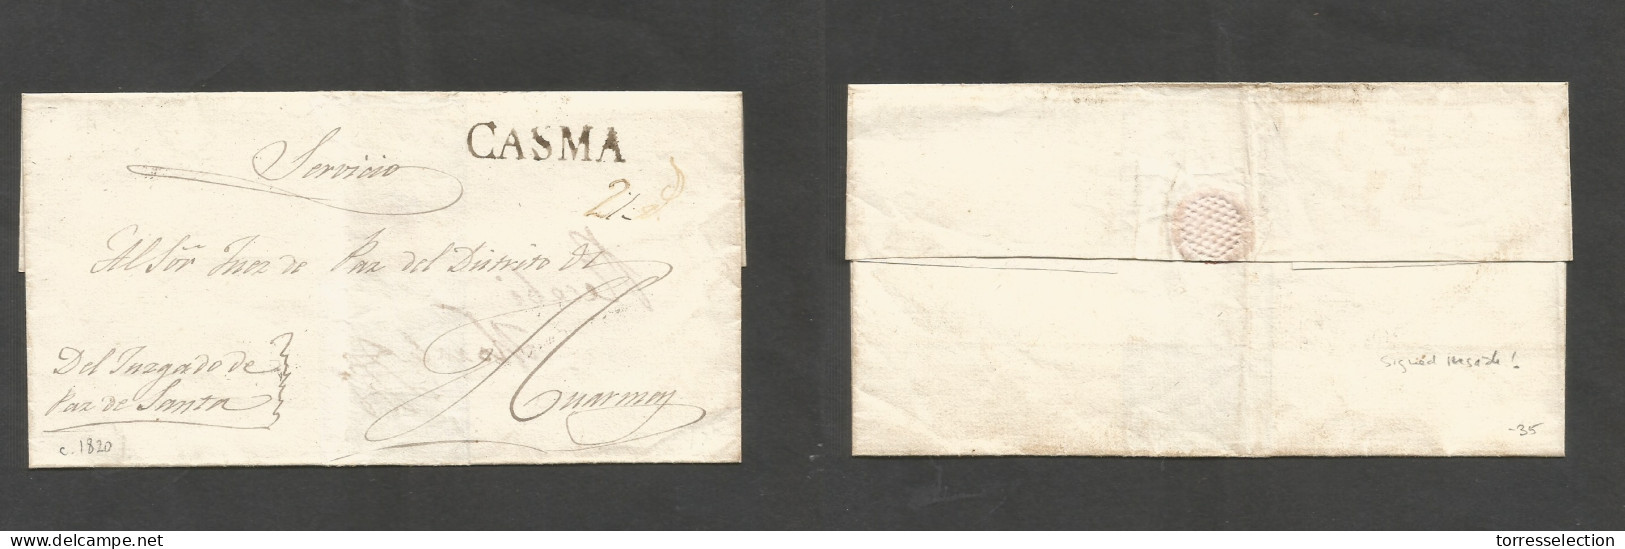 PERU. C. 1820. Casma - Huarmen E Official Mail / Servicio / Juzgado De Paz De Santa. Sobre Ink Pmk "CASMA" + "2rs". Reve - Perù